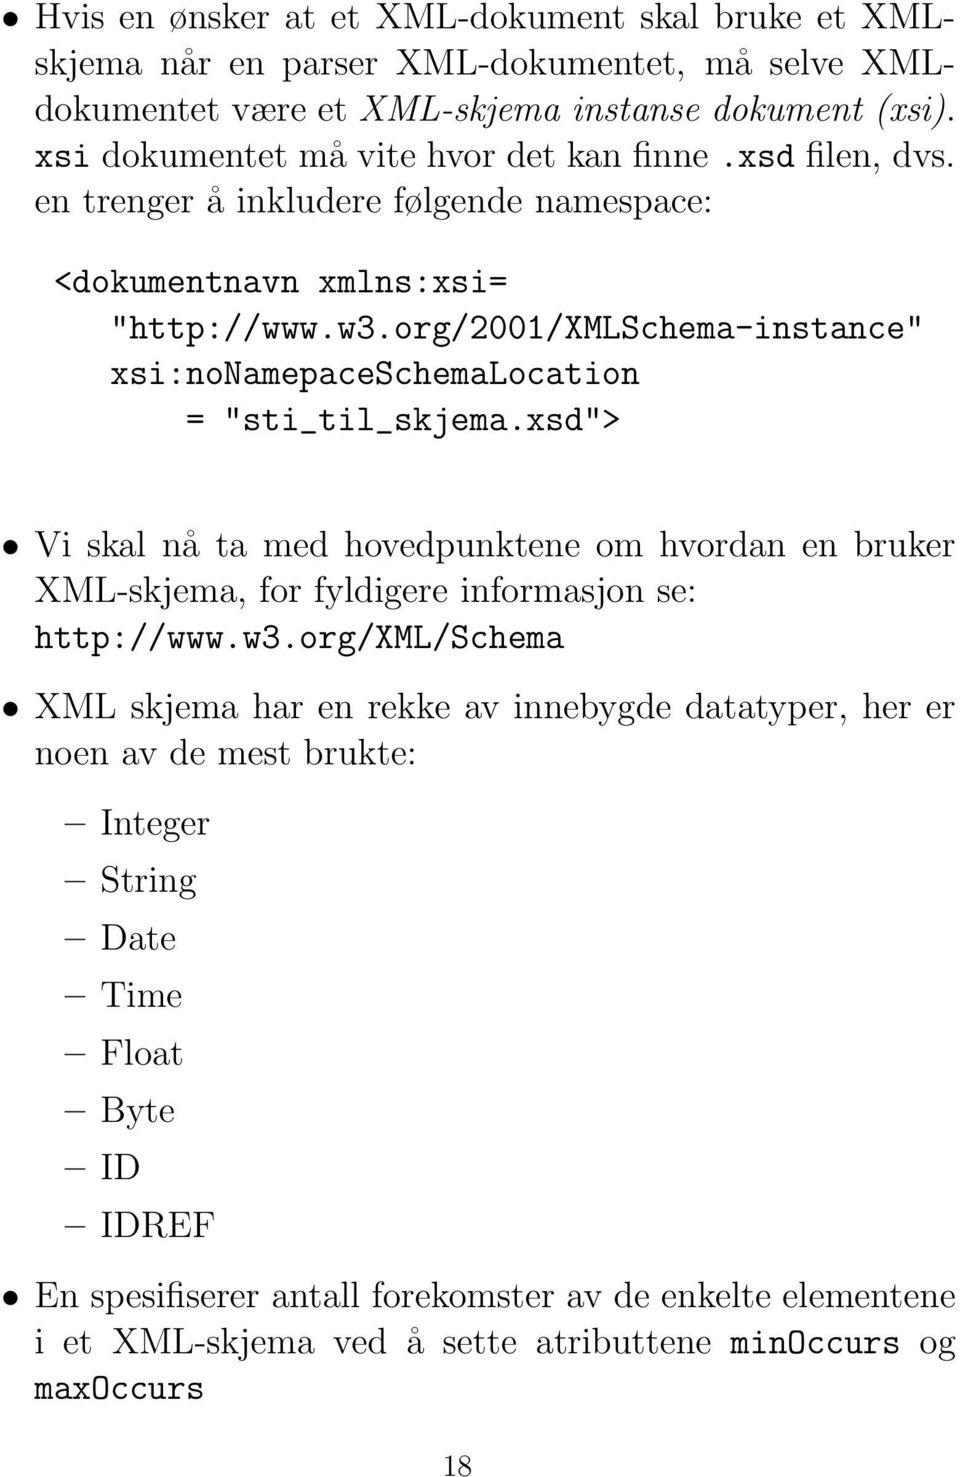 org/2001/xmlschema-instance" xsi:nonamepaceschemalocation = "sti_til_skjema.xsd"> Vi skal nå ta med hovedpunktene om hvordan en bruker XML-skjema, for fyldigere informasjon se: http://www.